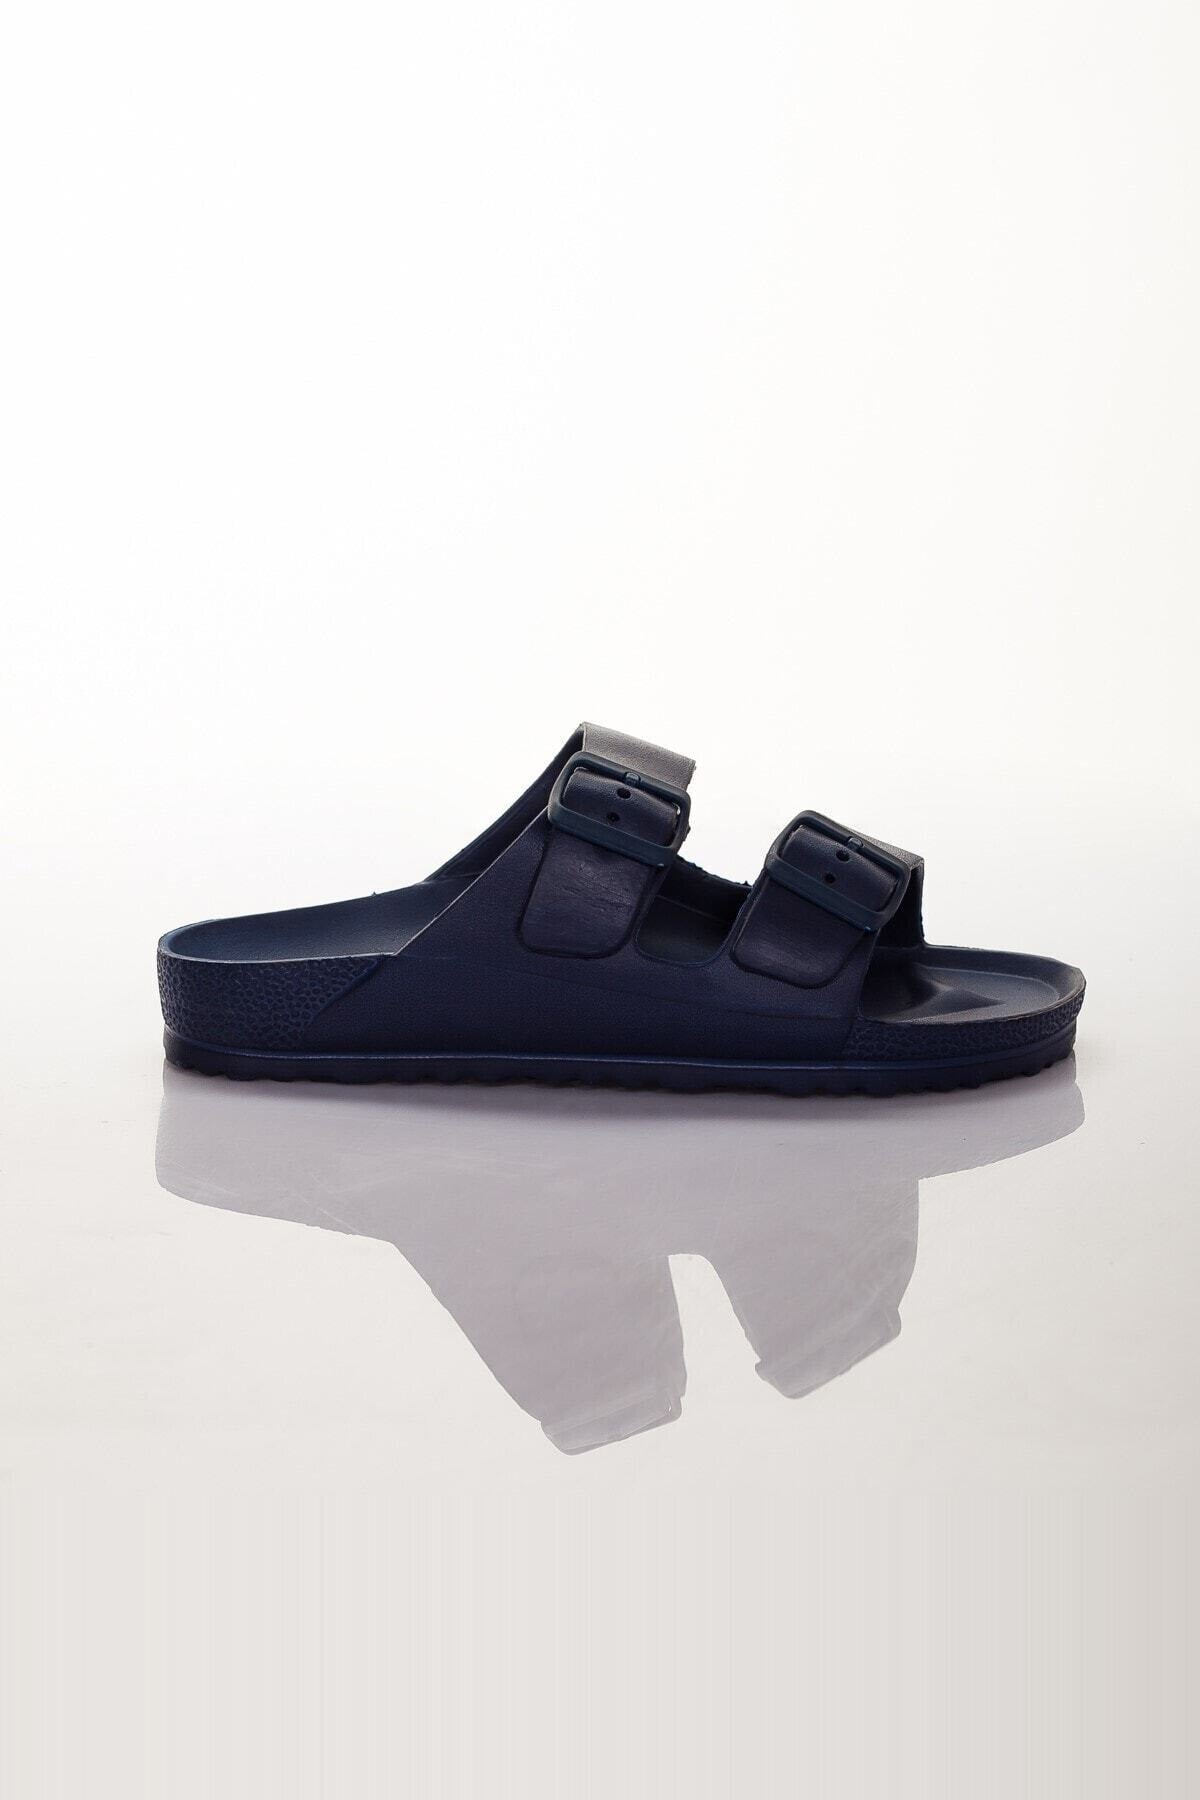 Men's Navy Blue Slippers